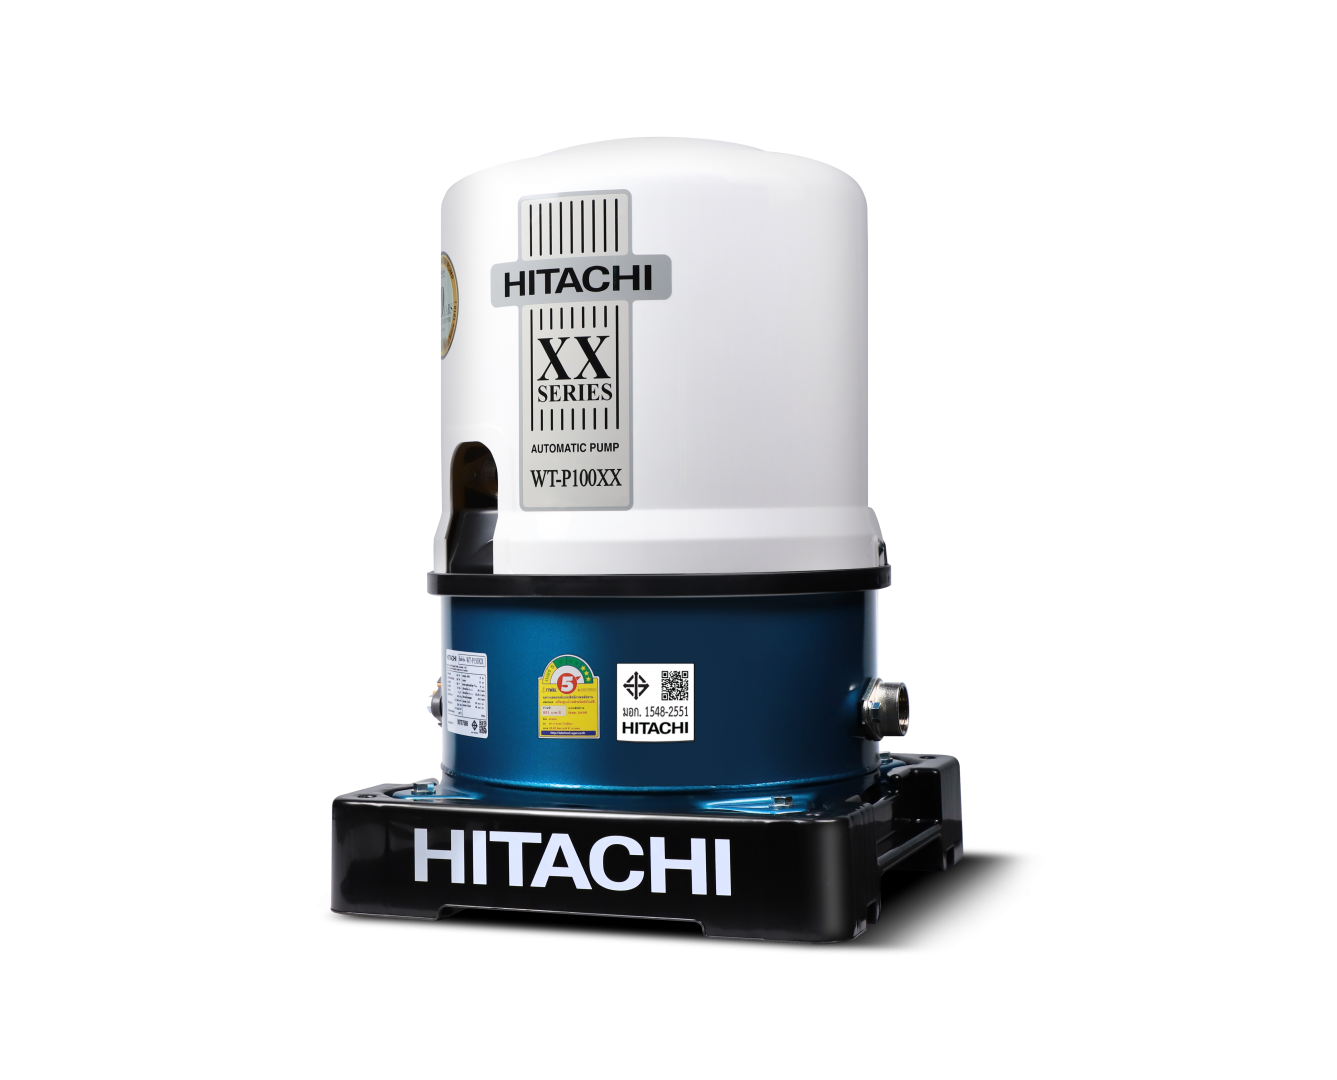 ปั๊มน้ำอัตโนมัติ 100w HITACHI WT-P100XX